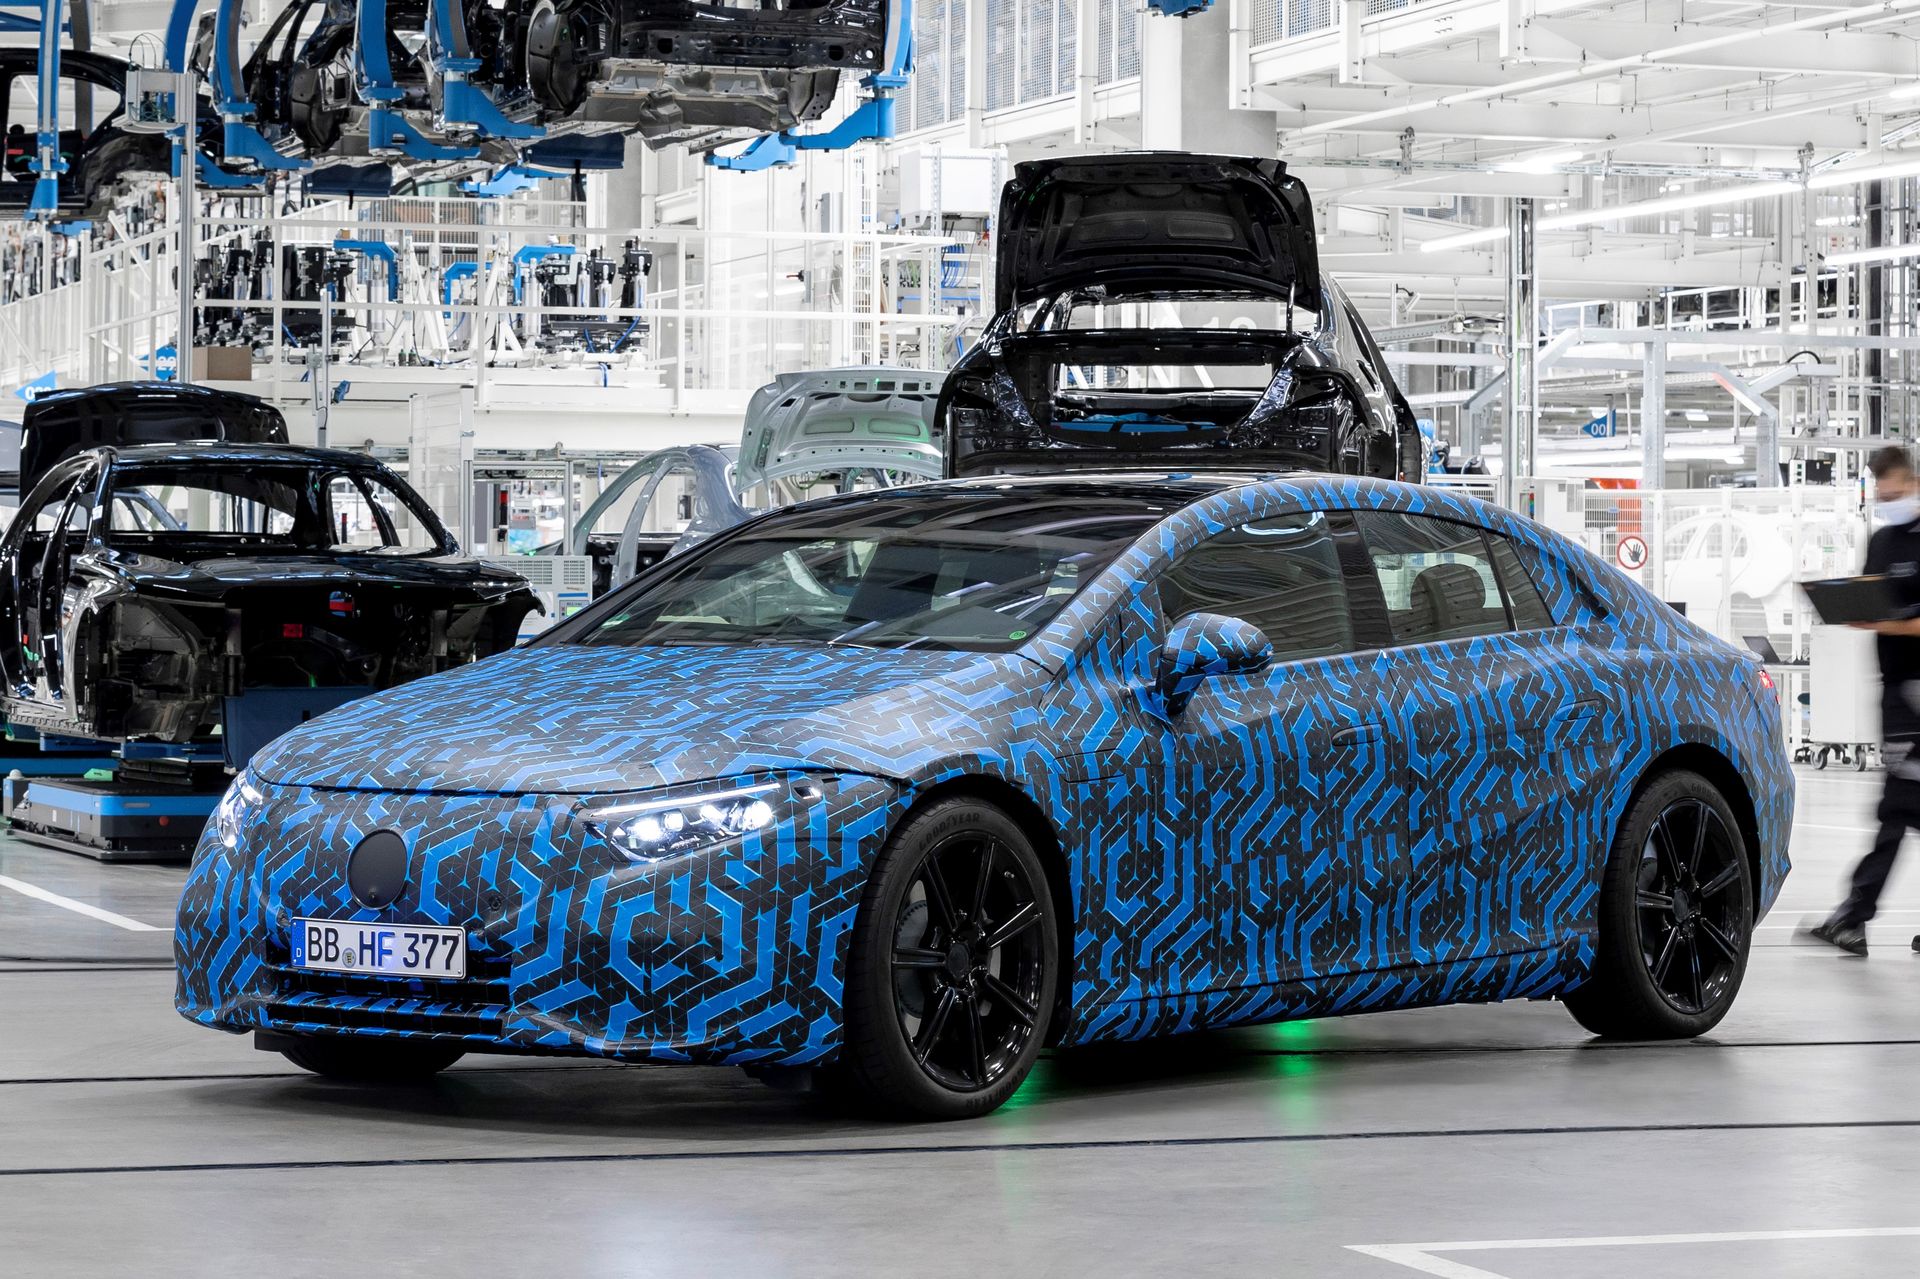 Mercedes : La berline électrique EQS sera commercialisée en août